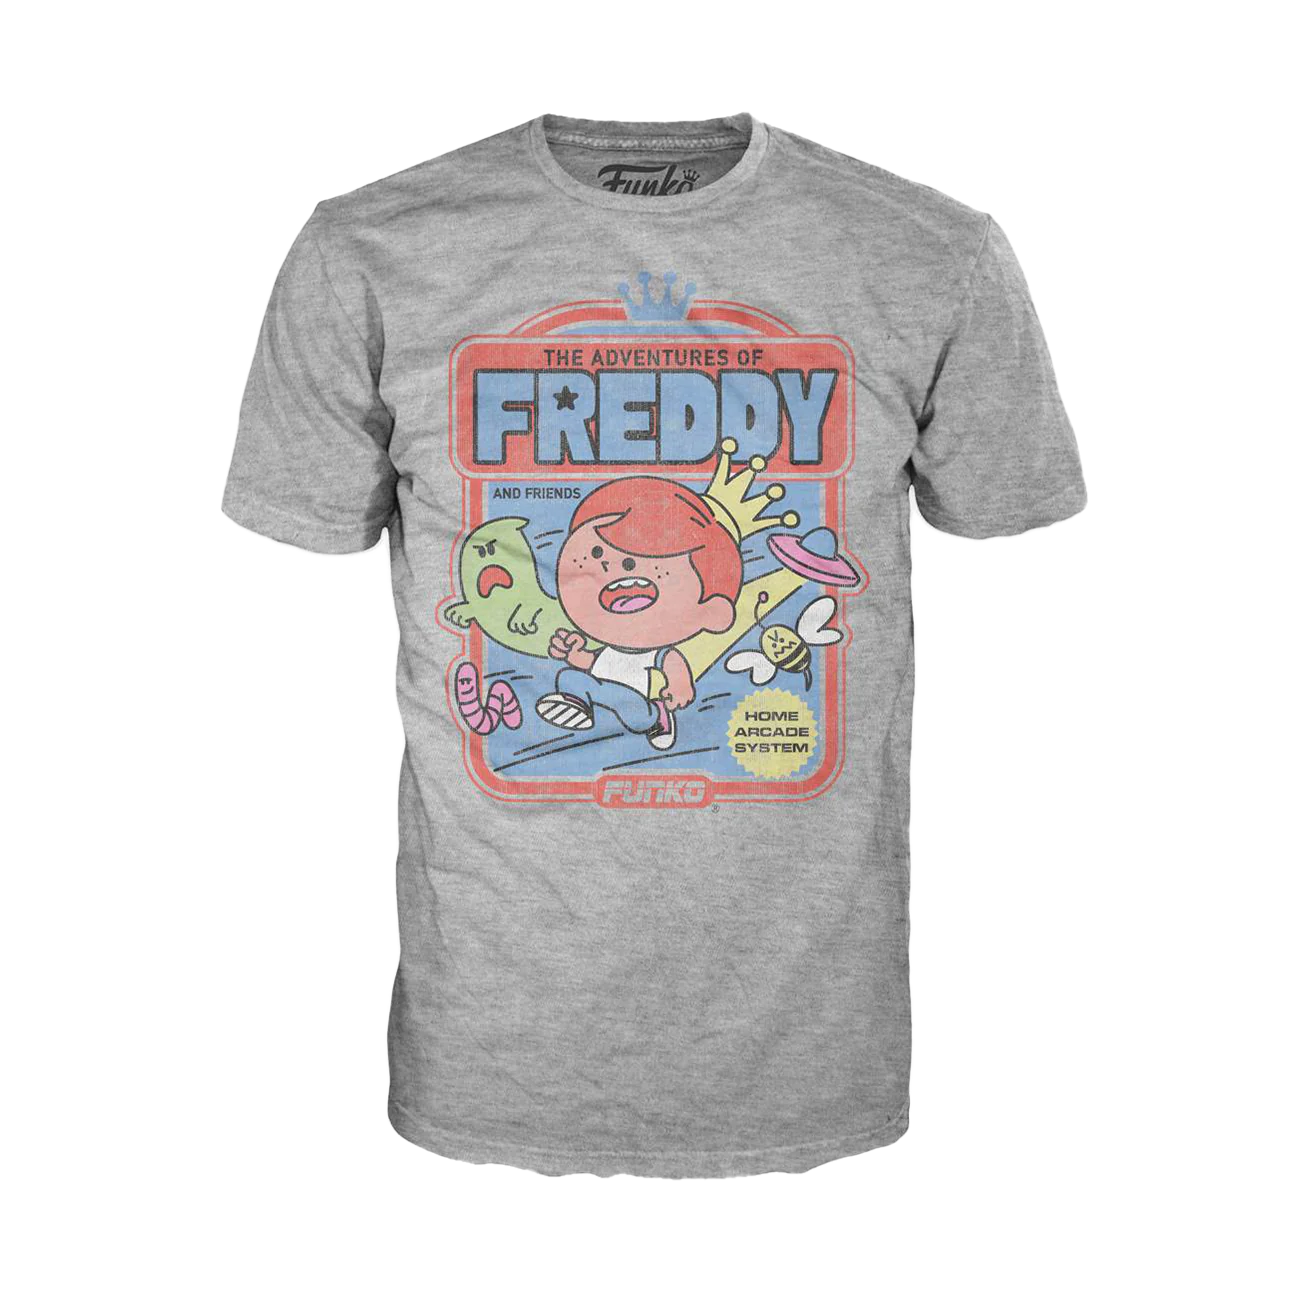 Freddy Funko Arcade Flyer Boxed Tee